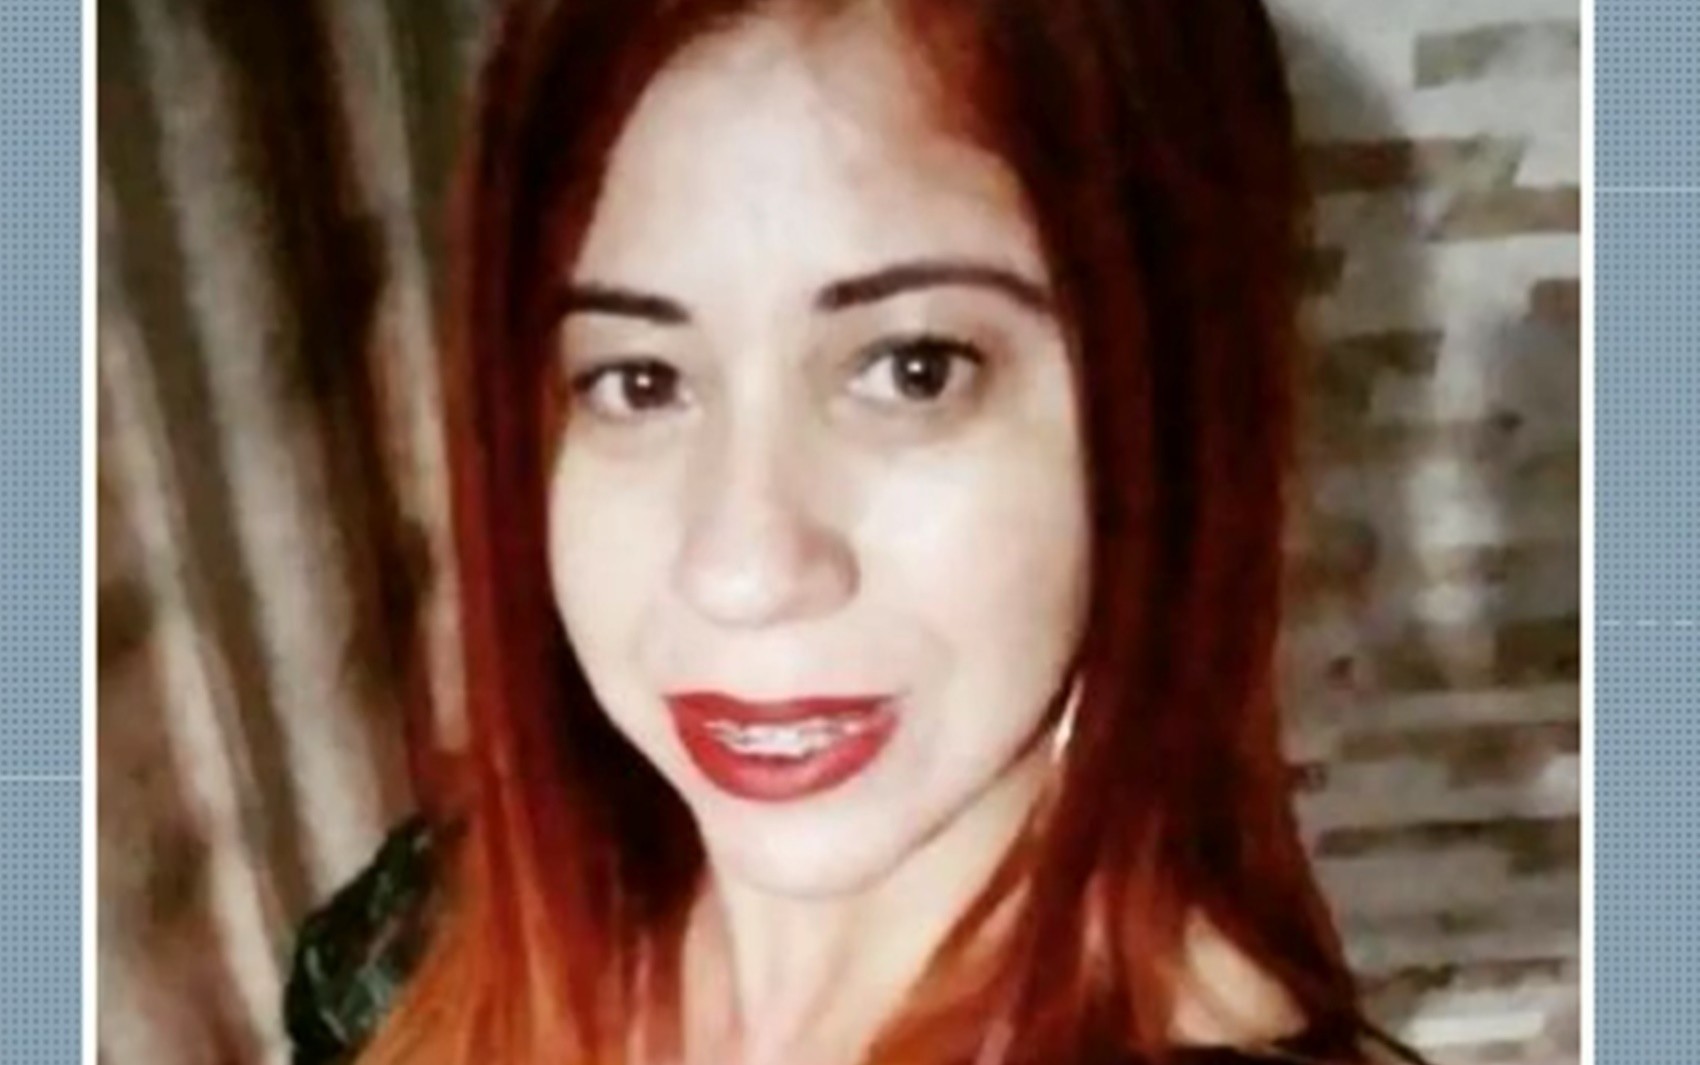 Acusado de matar mulher enforcada e abandonar corpo em terreno é condenado a 14 anos de prisão em Pouso Alegre, MG